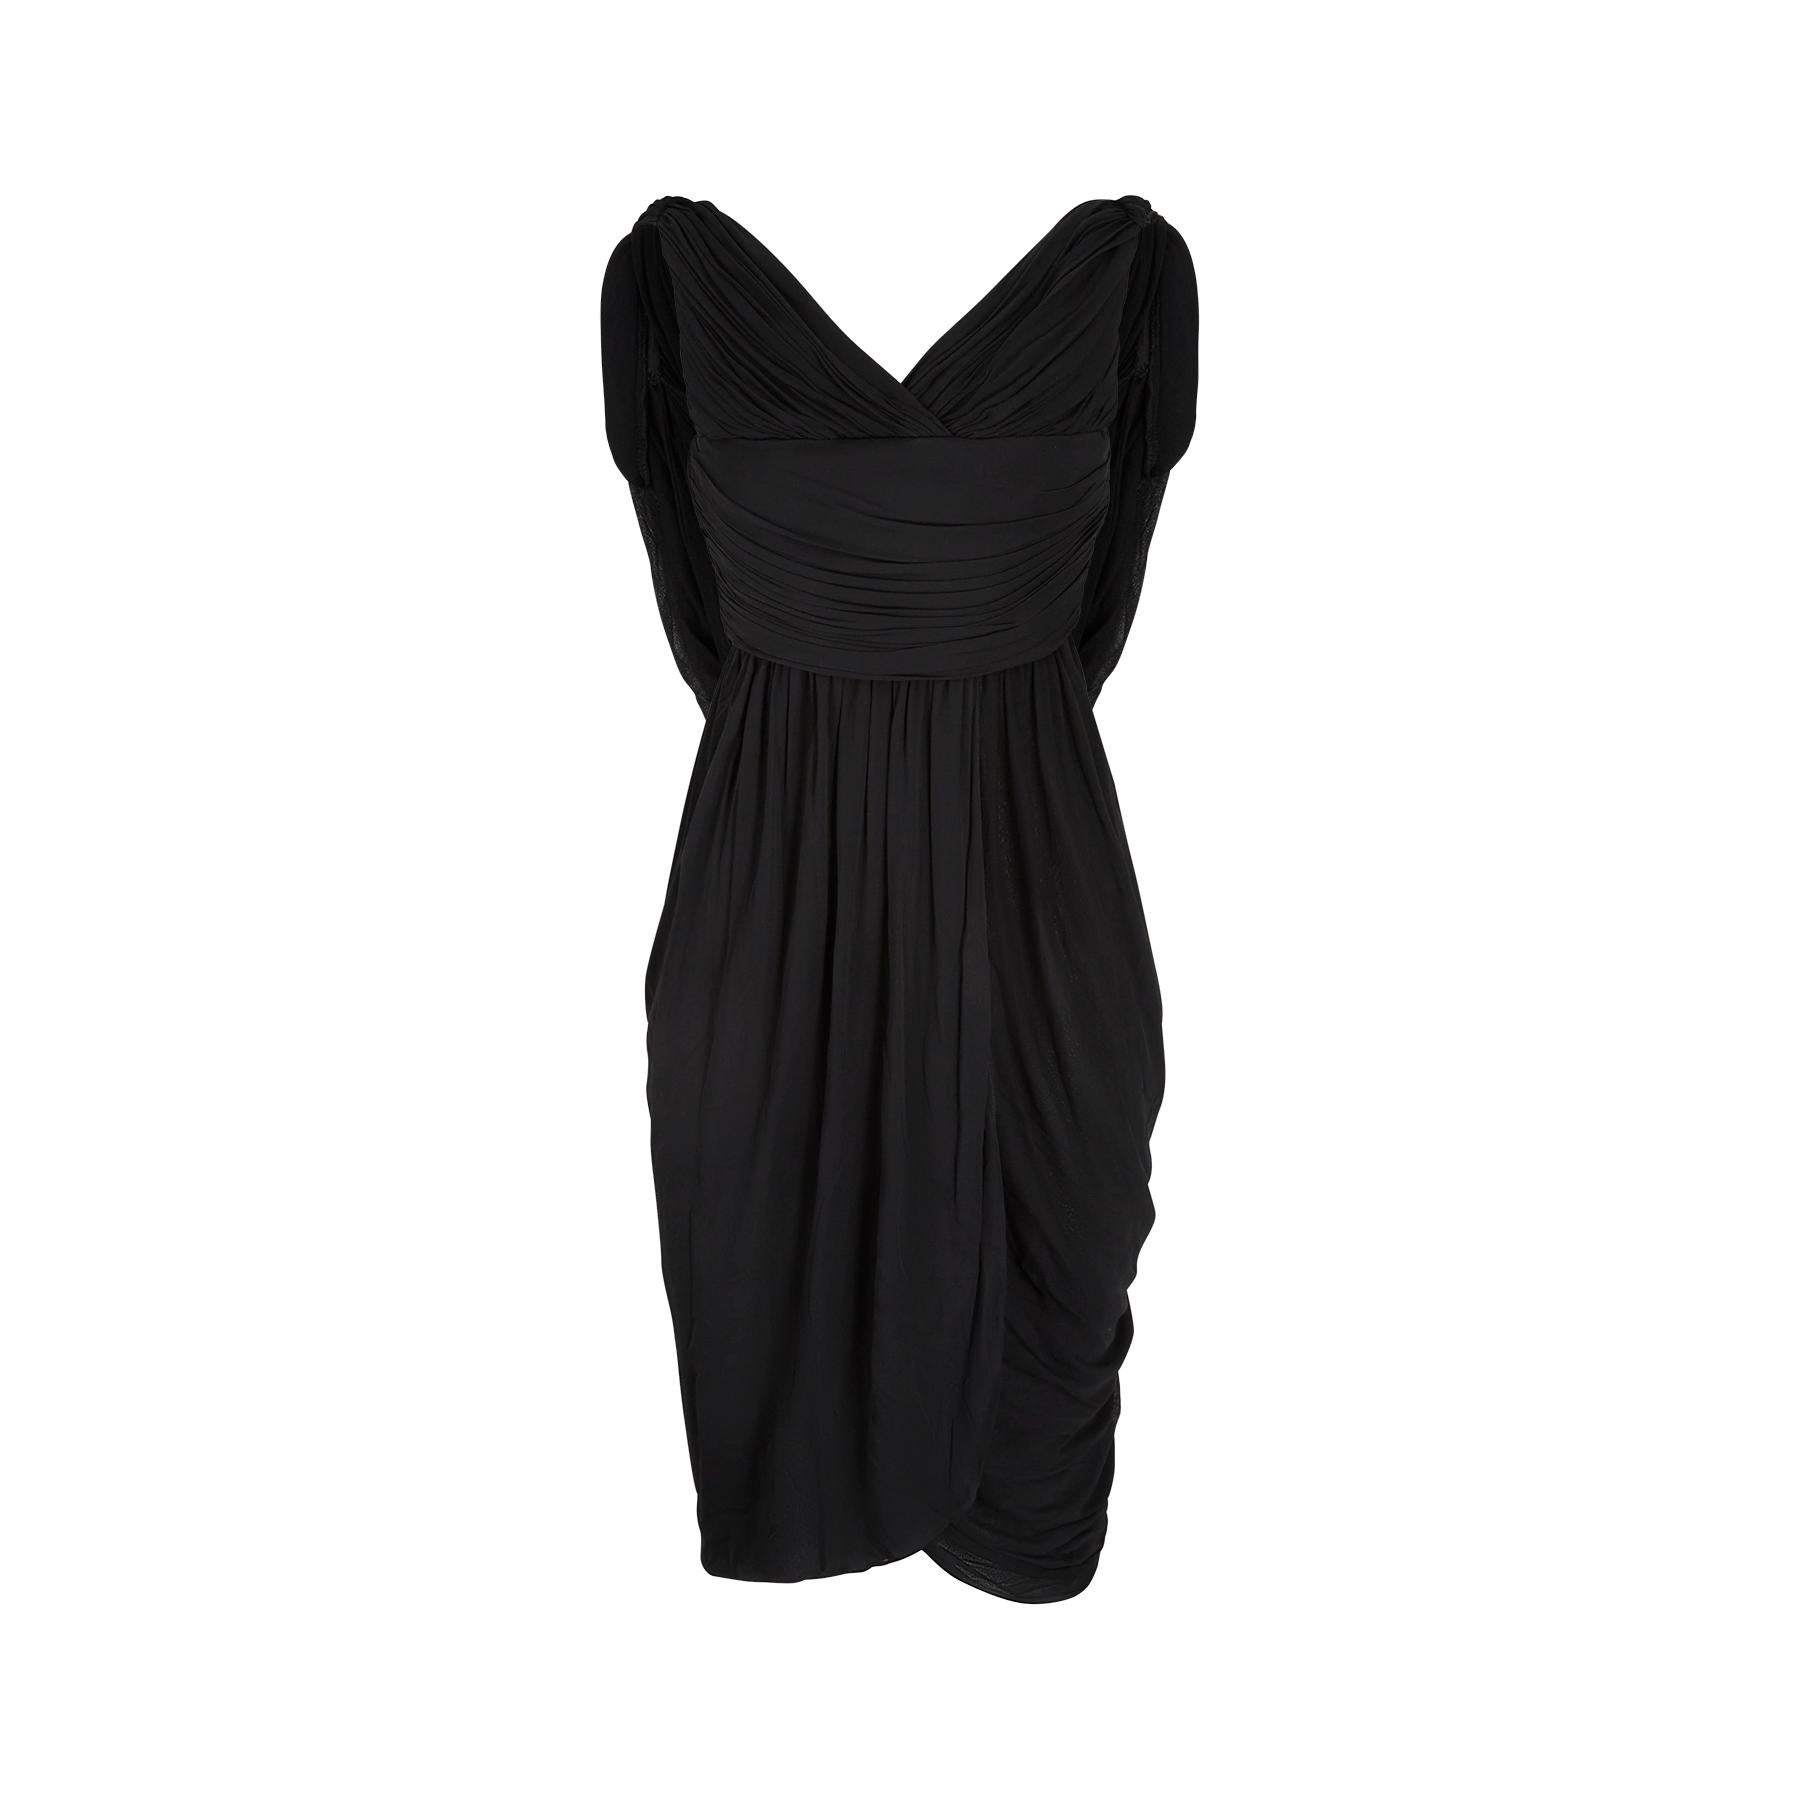 Ein absolut großartiges und sammelwürdiges Halston black label couture 1970er Göttin Kleid. Halston hat sich eindeutig von einer früheren Ära inspirieren lassen, und so finden sich Elemente aus der Mode der 1940er und 1950er Jahre. Es ist tadellos